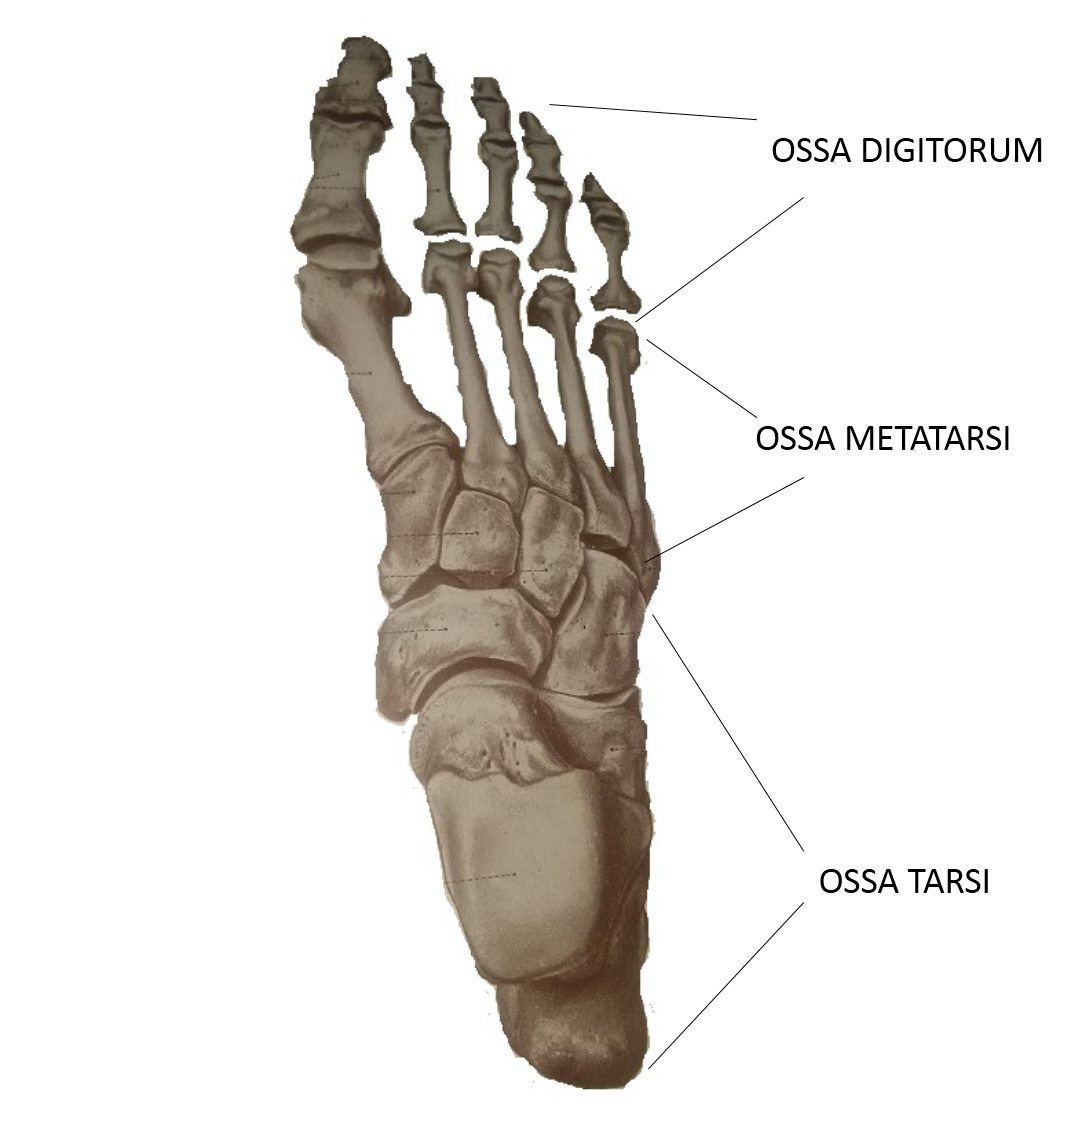 5 фаланга стопы. Сесамовидные кости ладьевидной кости стопы. Ossa pedis анатомия. Кости стопы (ossa pedis). Строение стопы сесамовидные кости.